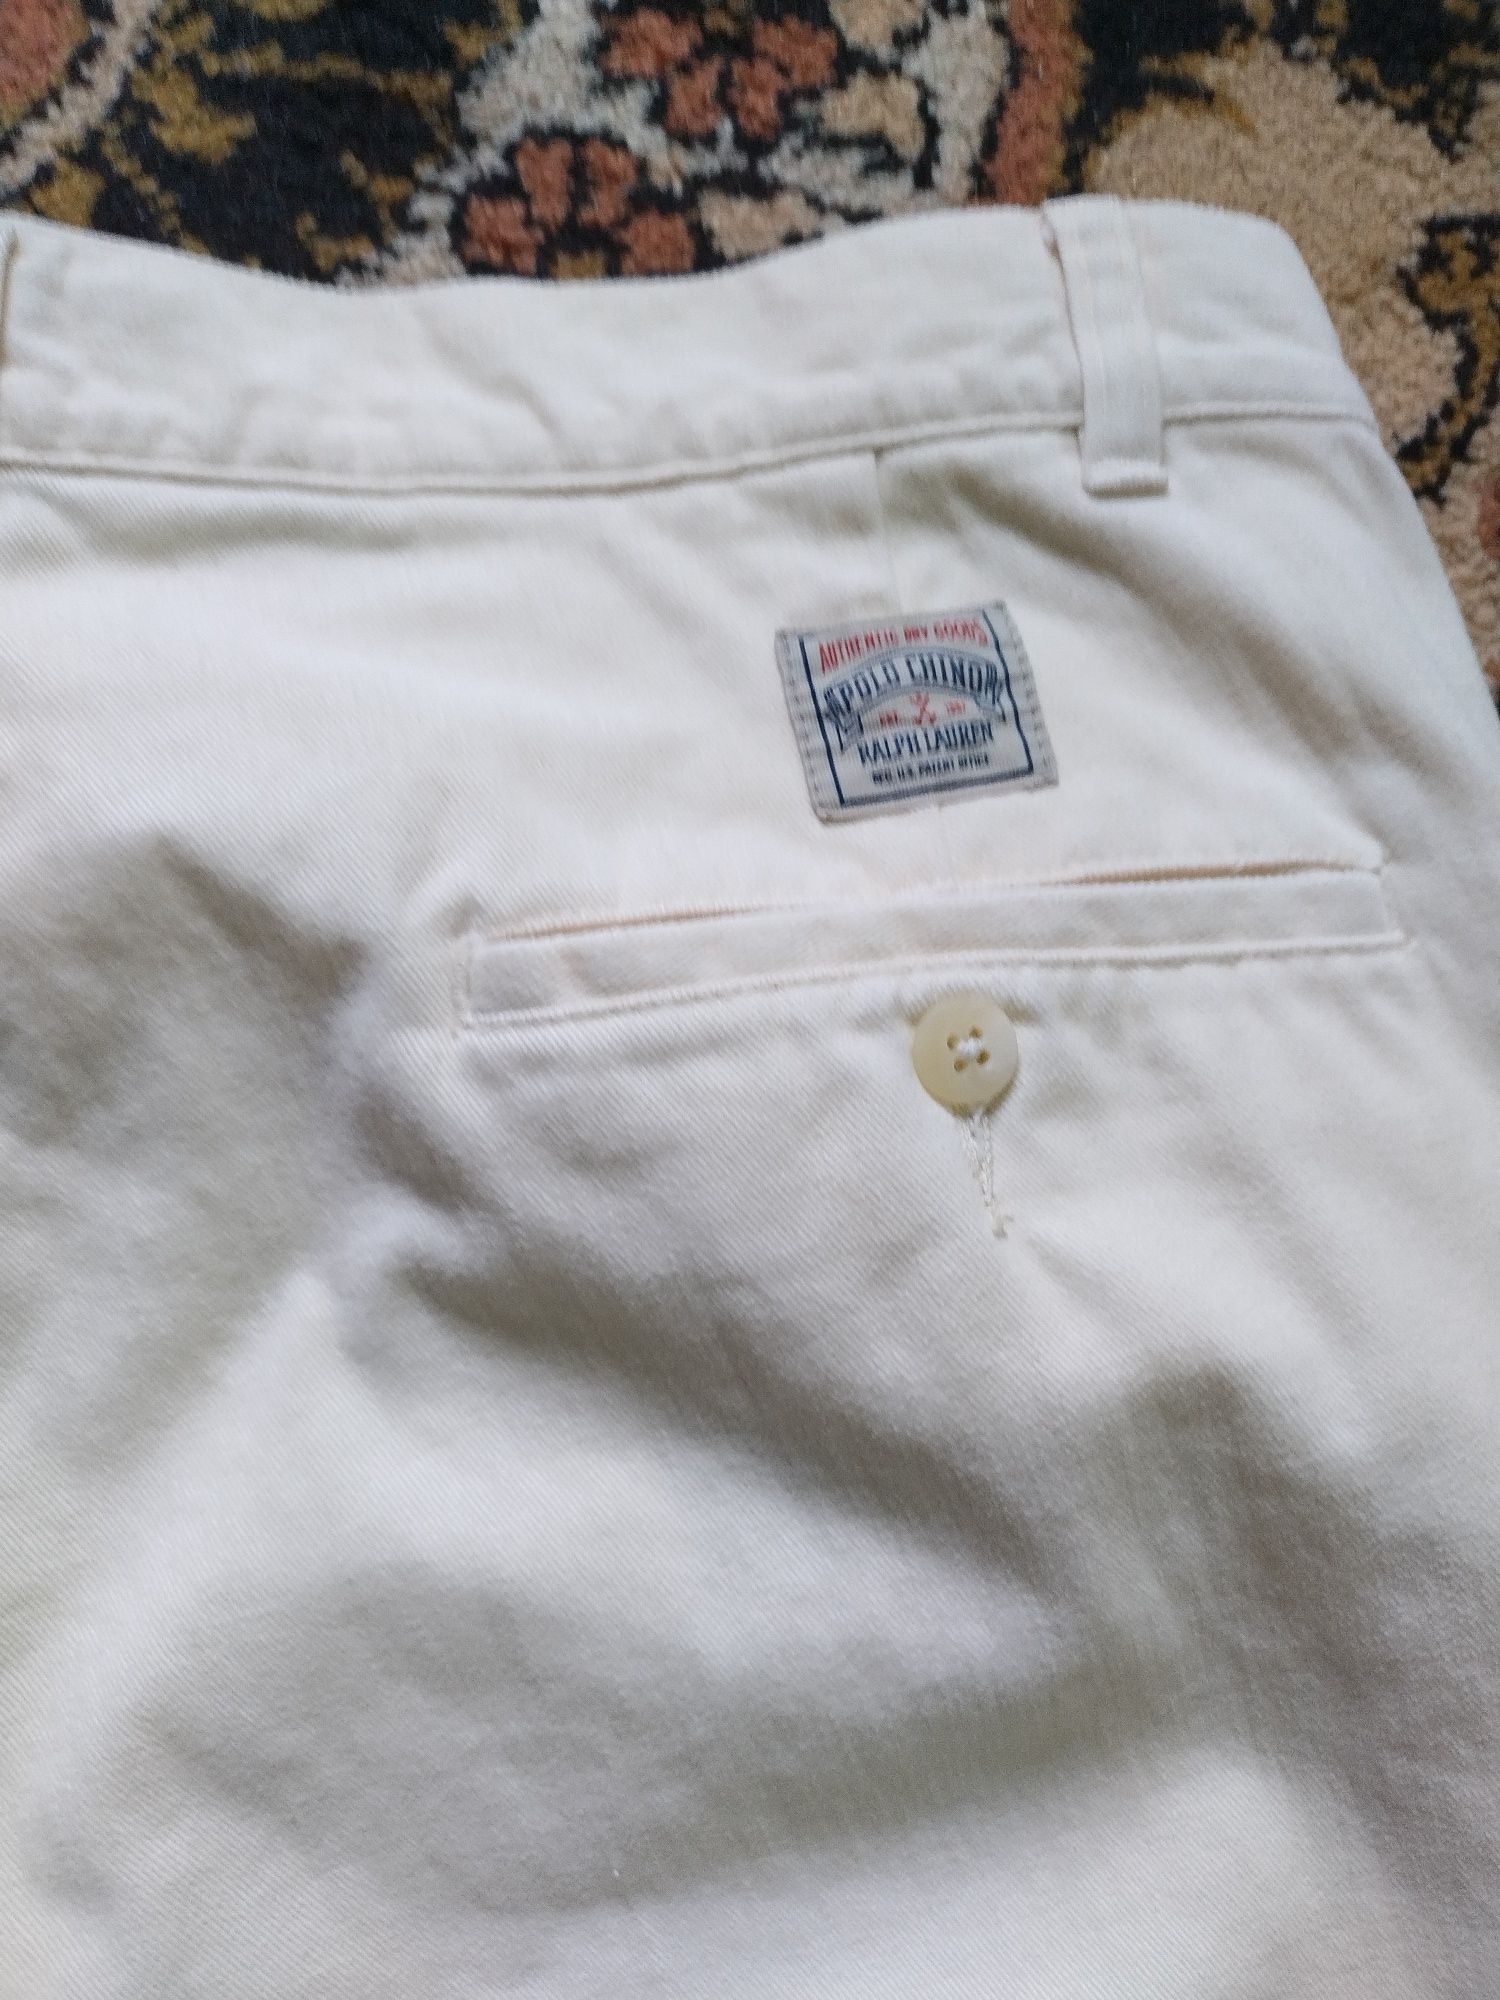 Pantaloni (jeans) Polo Ralph Lauren